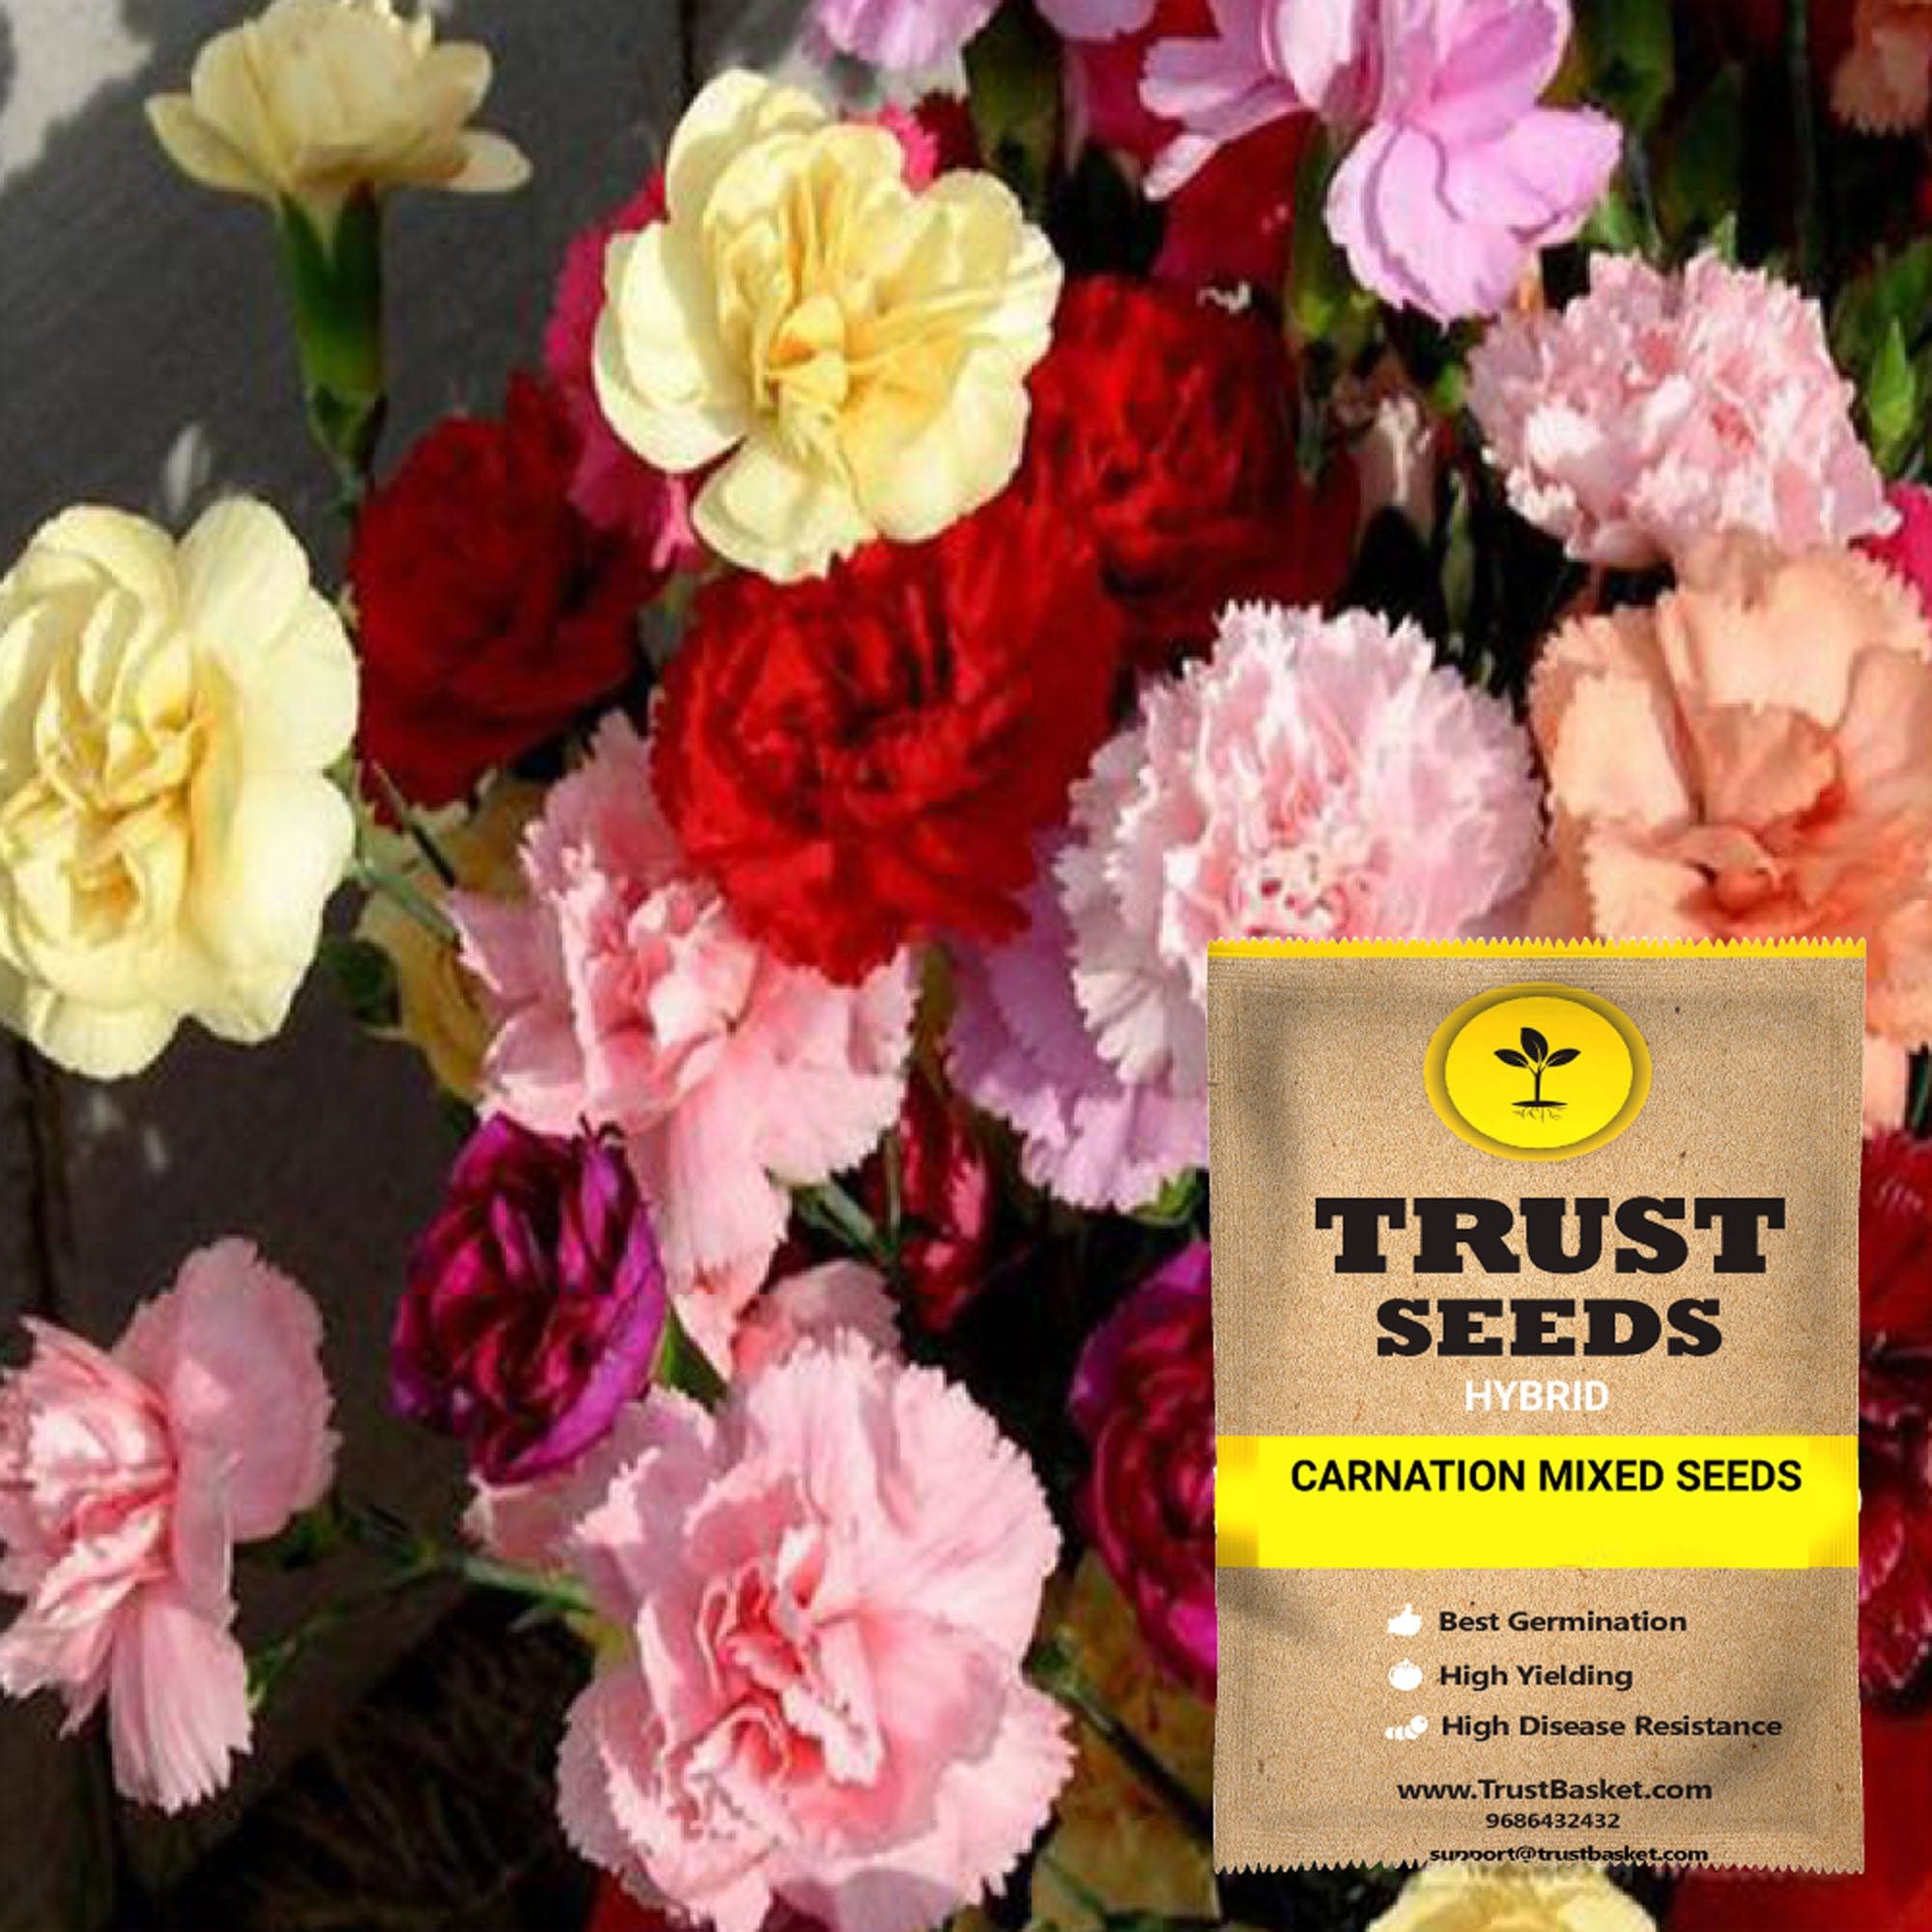 carnation flower seeds sale